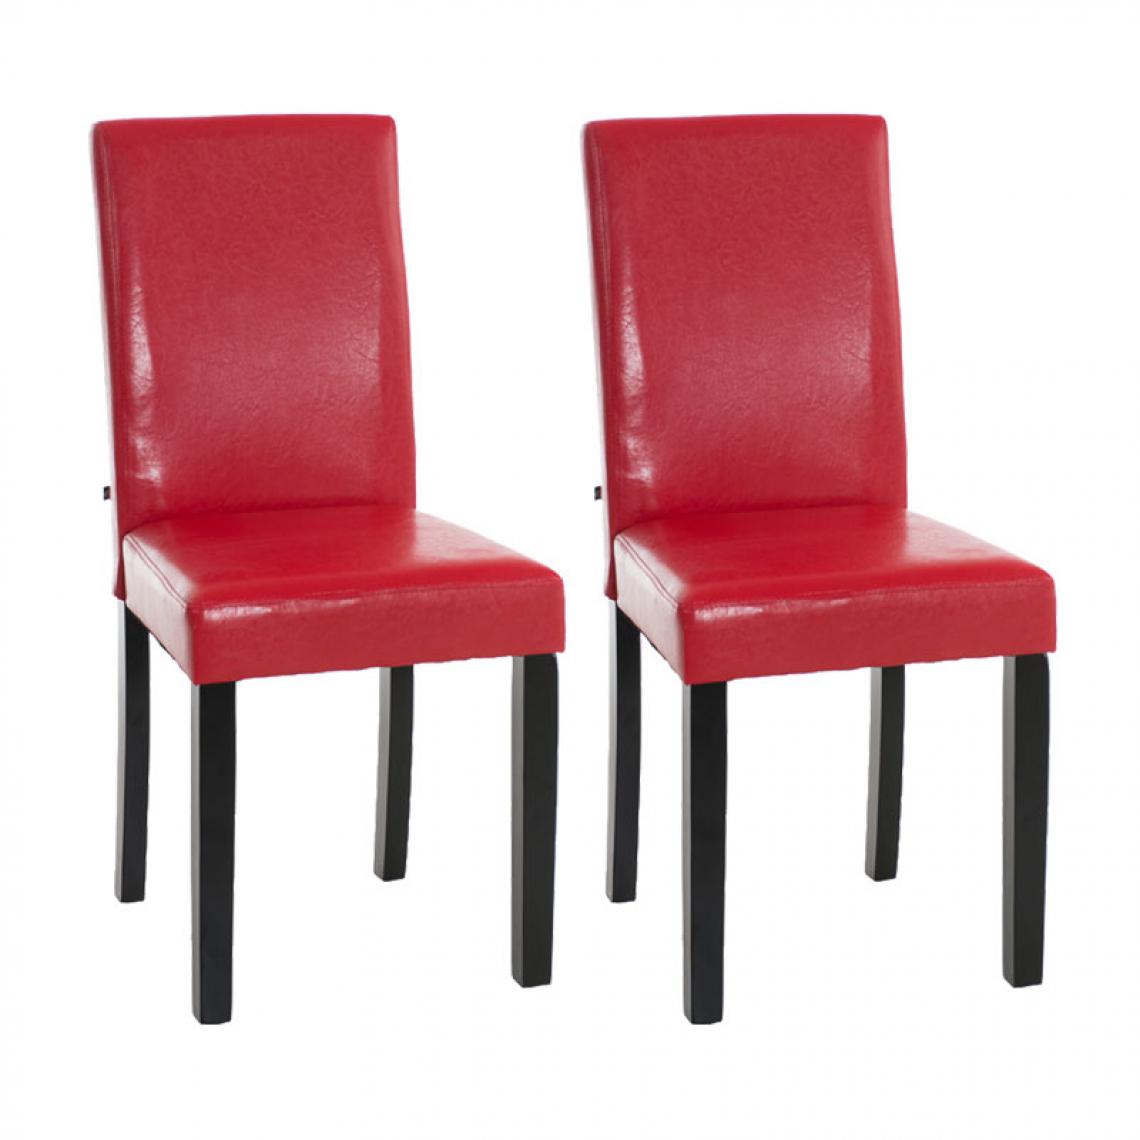 Icaverne - Contemporain Lot de 2 chaises de salle à manger Rabat noir couleur rouge - Chaises